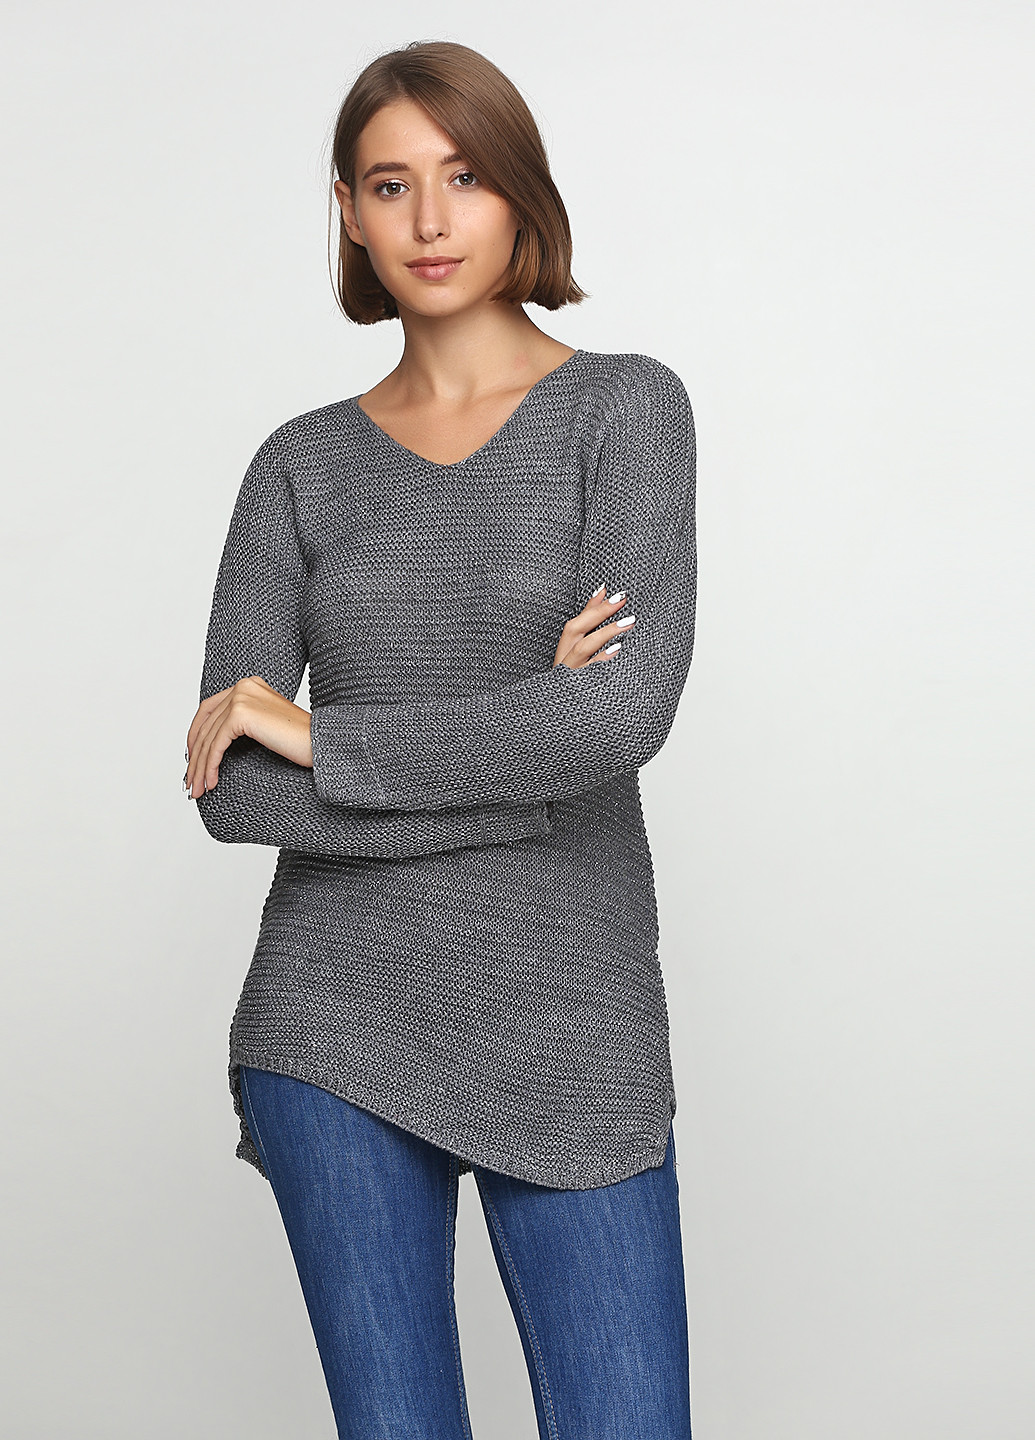 Грифельно-серый демисезонный пуловер пуловер Eser